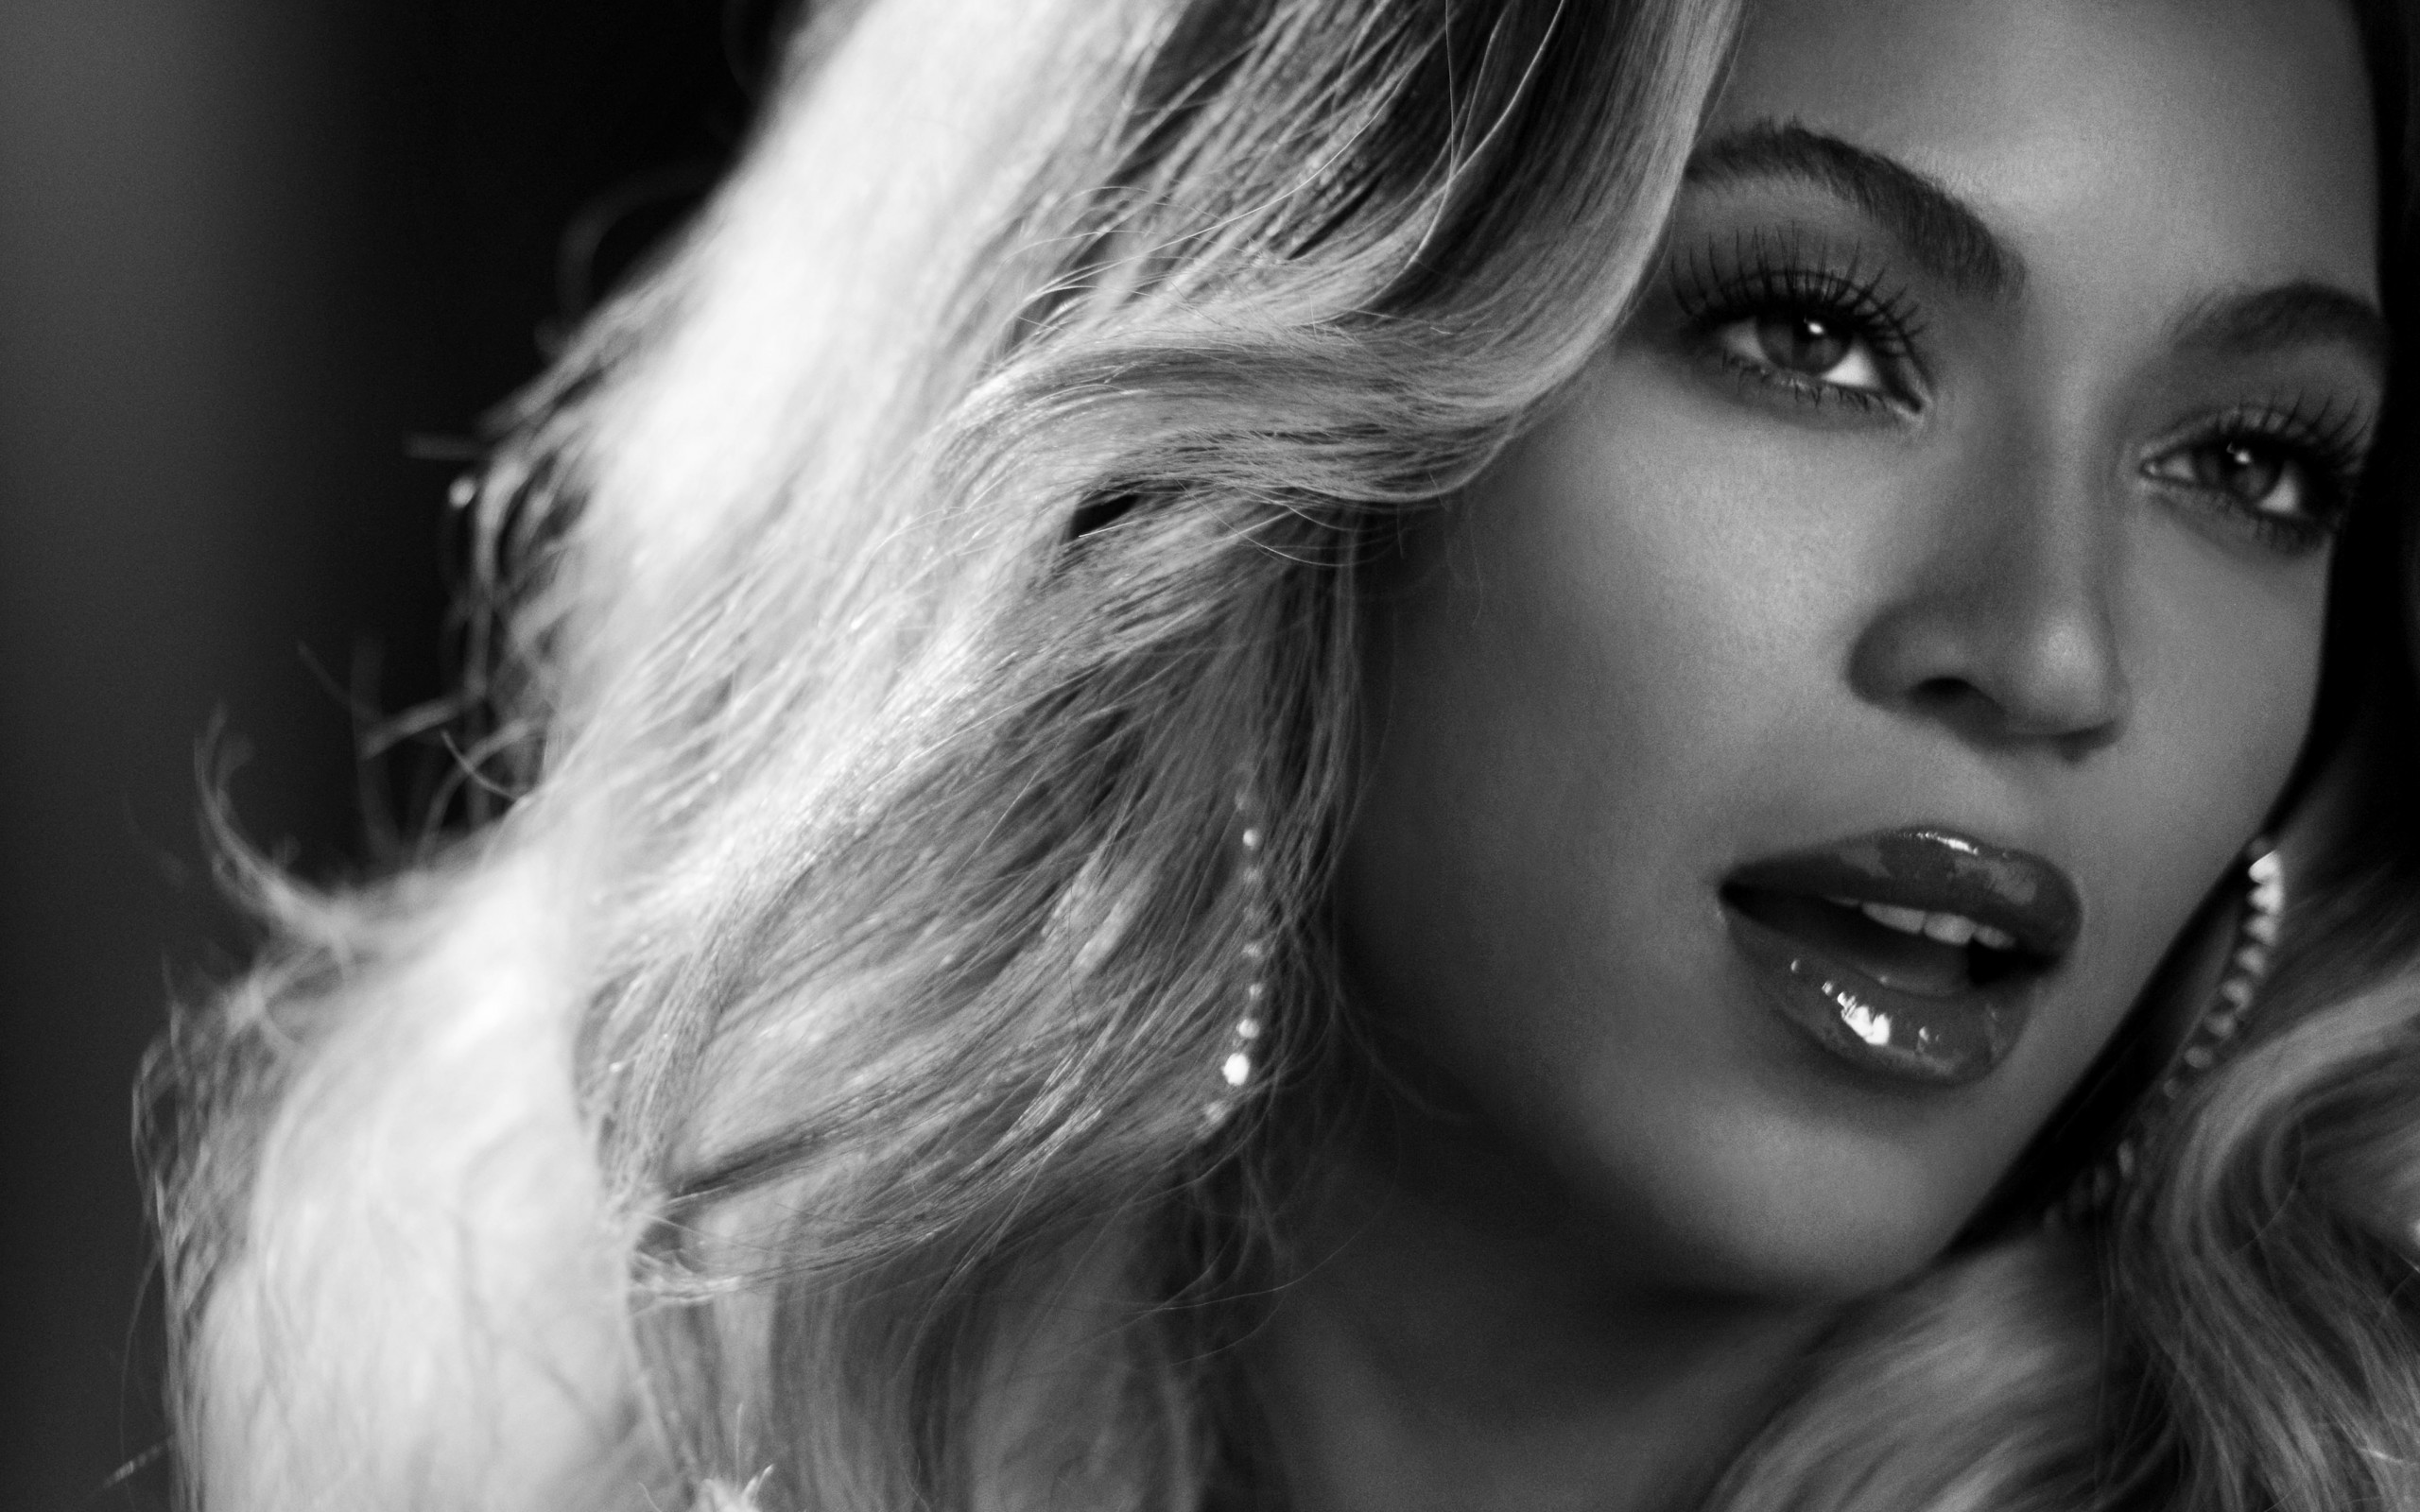 Beyonce in Black & White Wallpaper for Desktop 2560x1600